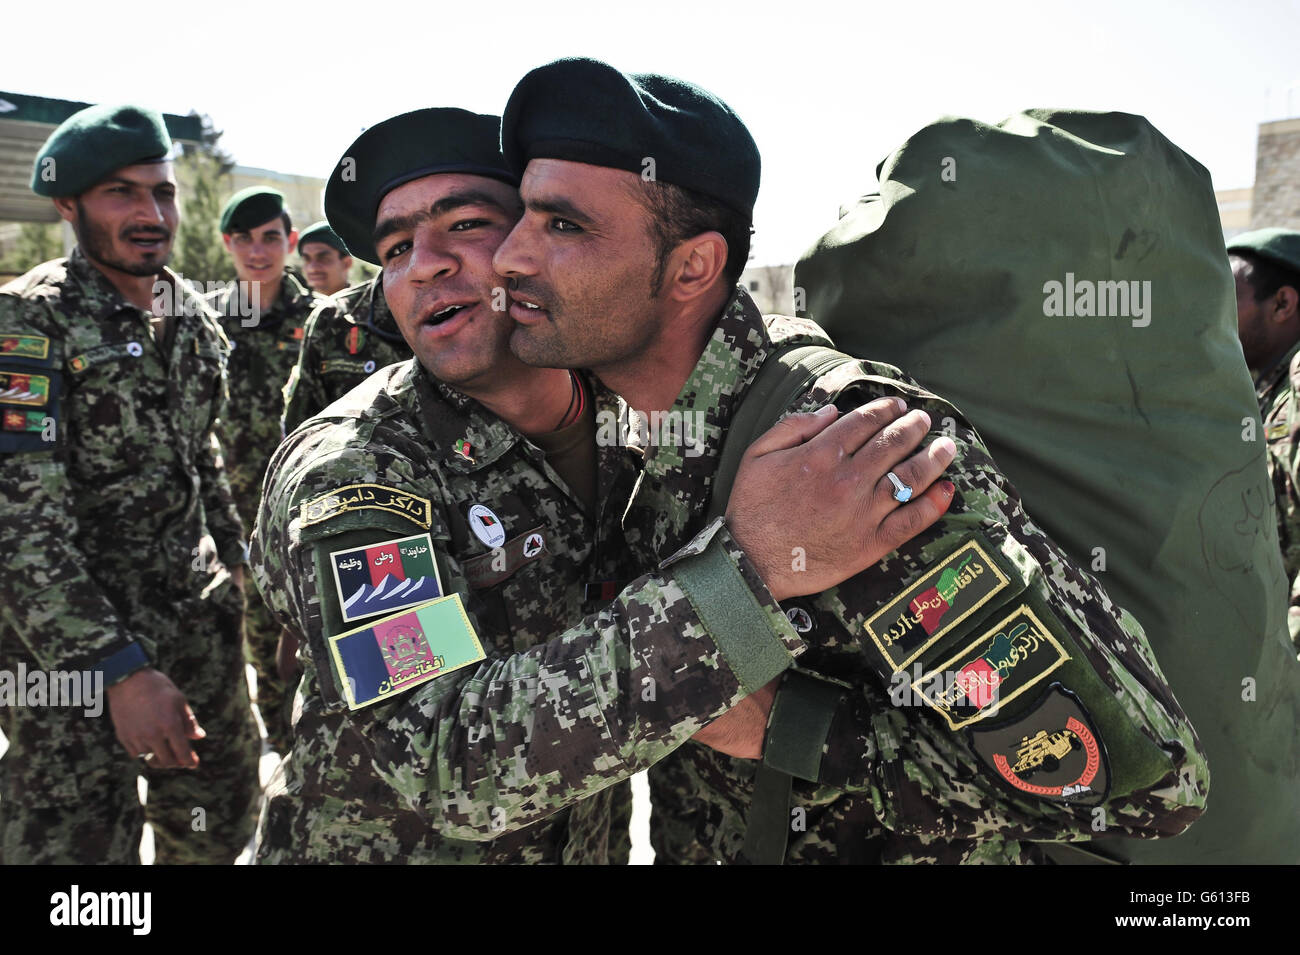 Offiziere der afghanischen Nationalarmee umarmen und sagen Auf Wiedersehen auf dem Platz der Parade im Militärausbildungszentrum Kabul, Kabul, Afghanistan, nachdem sie einer Feldeinheit zugewiesen wurden und sich schließlich auf den Weg gemacht haben, um im Theater gegen die Taliban zu kämpfen. Stockfoto